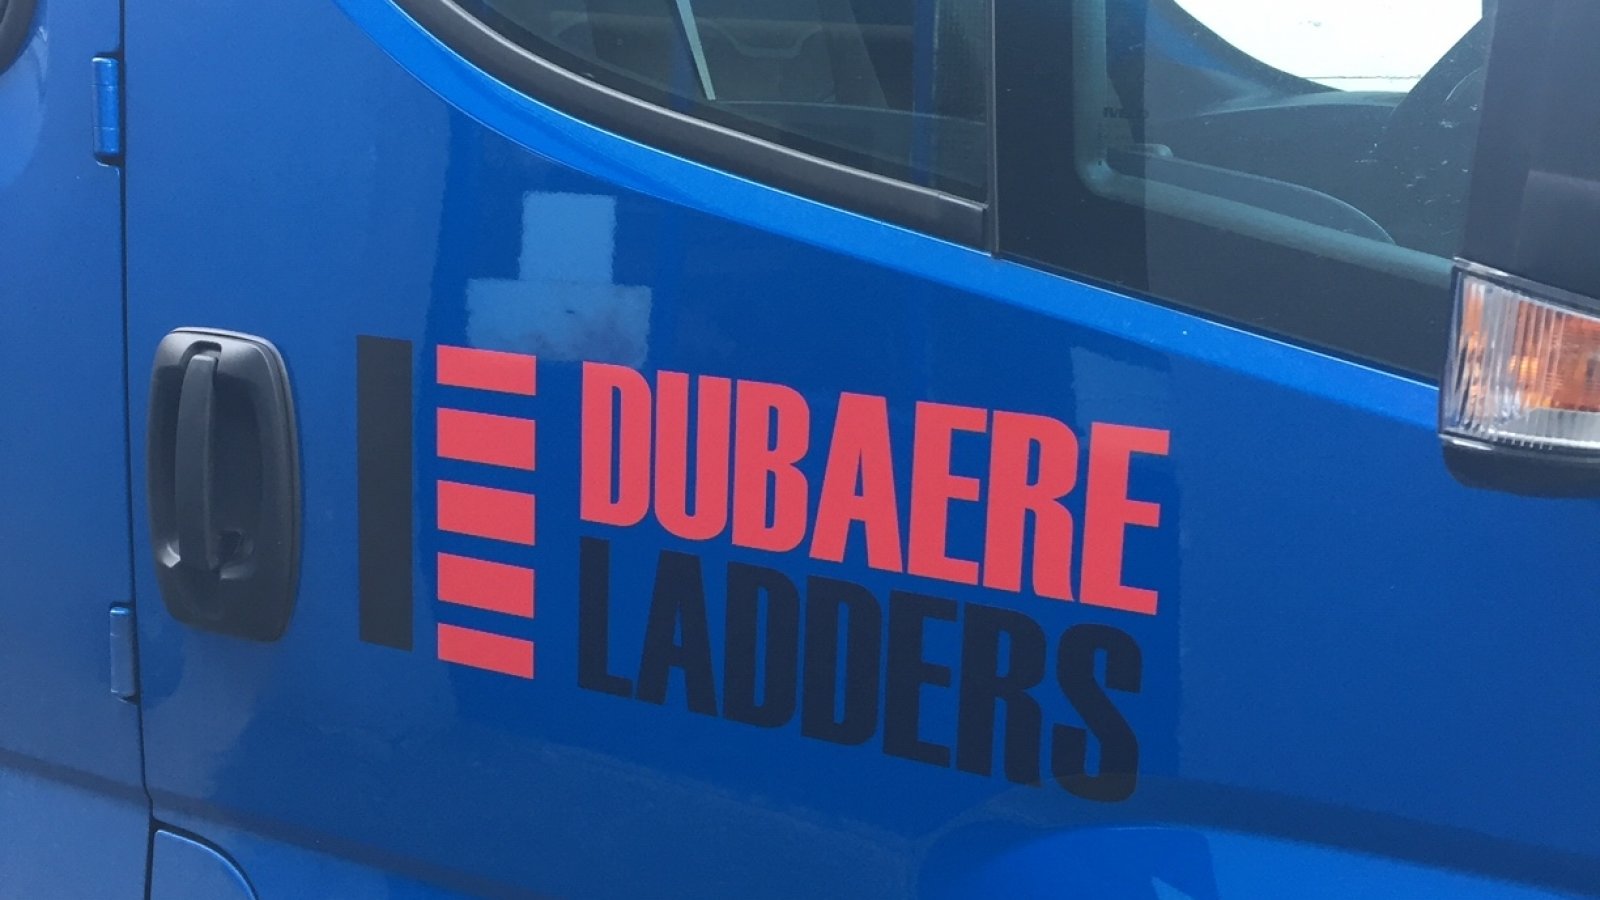 Heures D Ouverture - Artikel - Dubaere Ladders